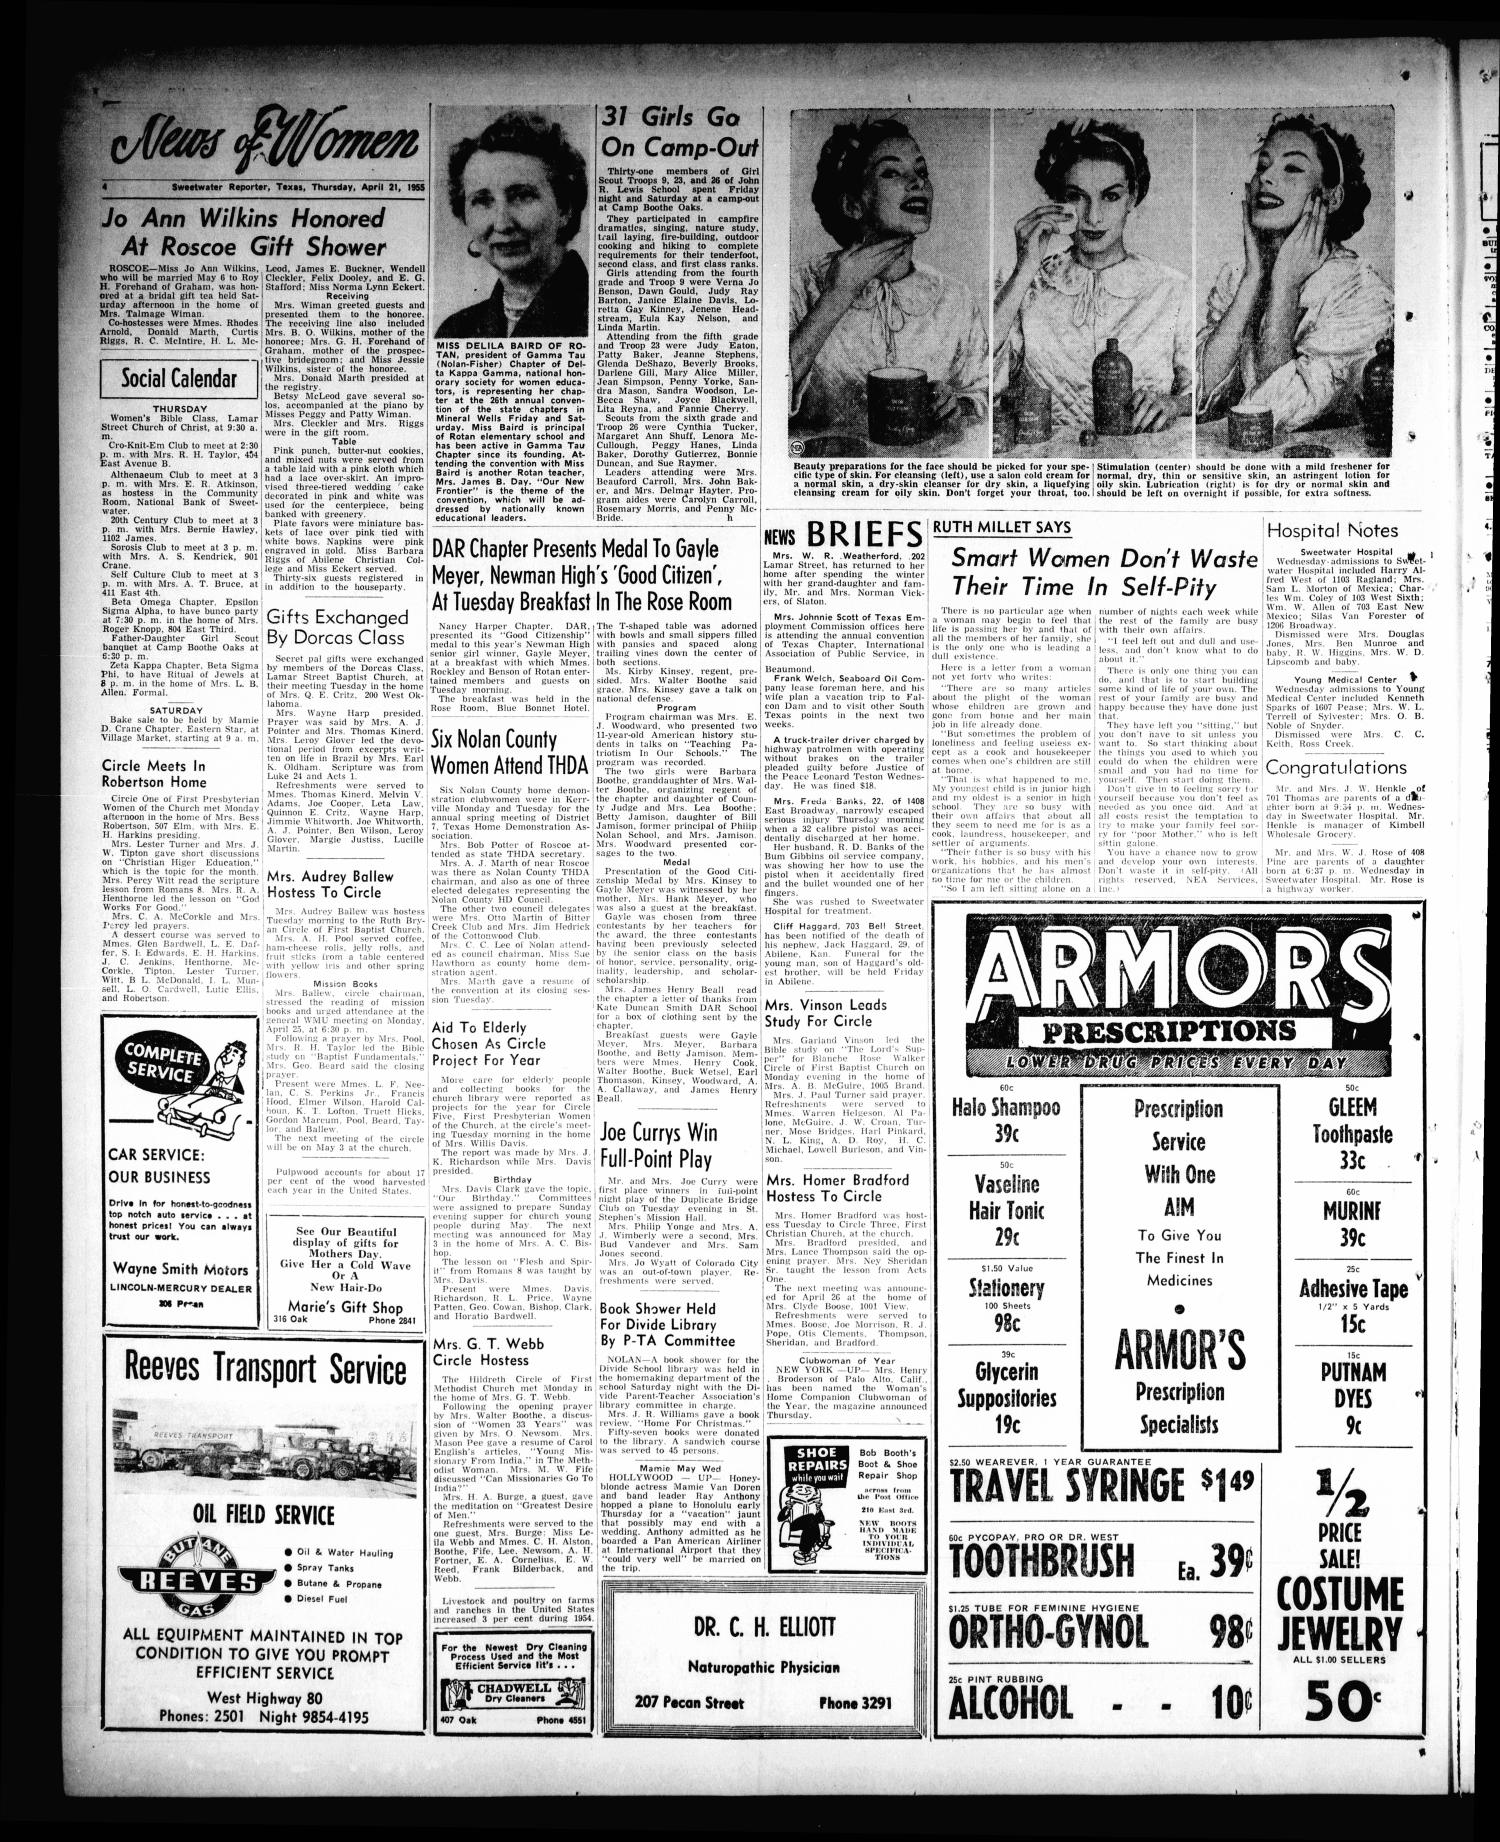 Sheet of Newsprint 4 1/4 x 5 1/4